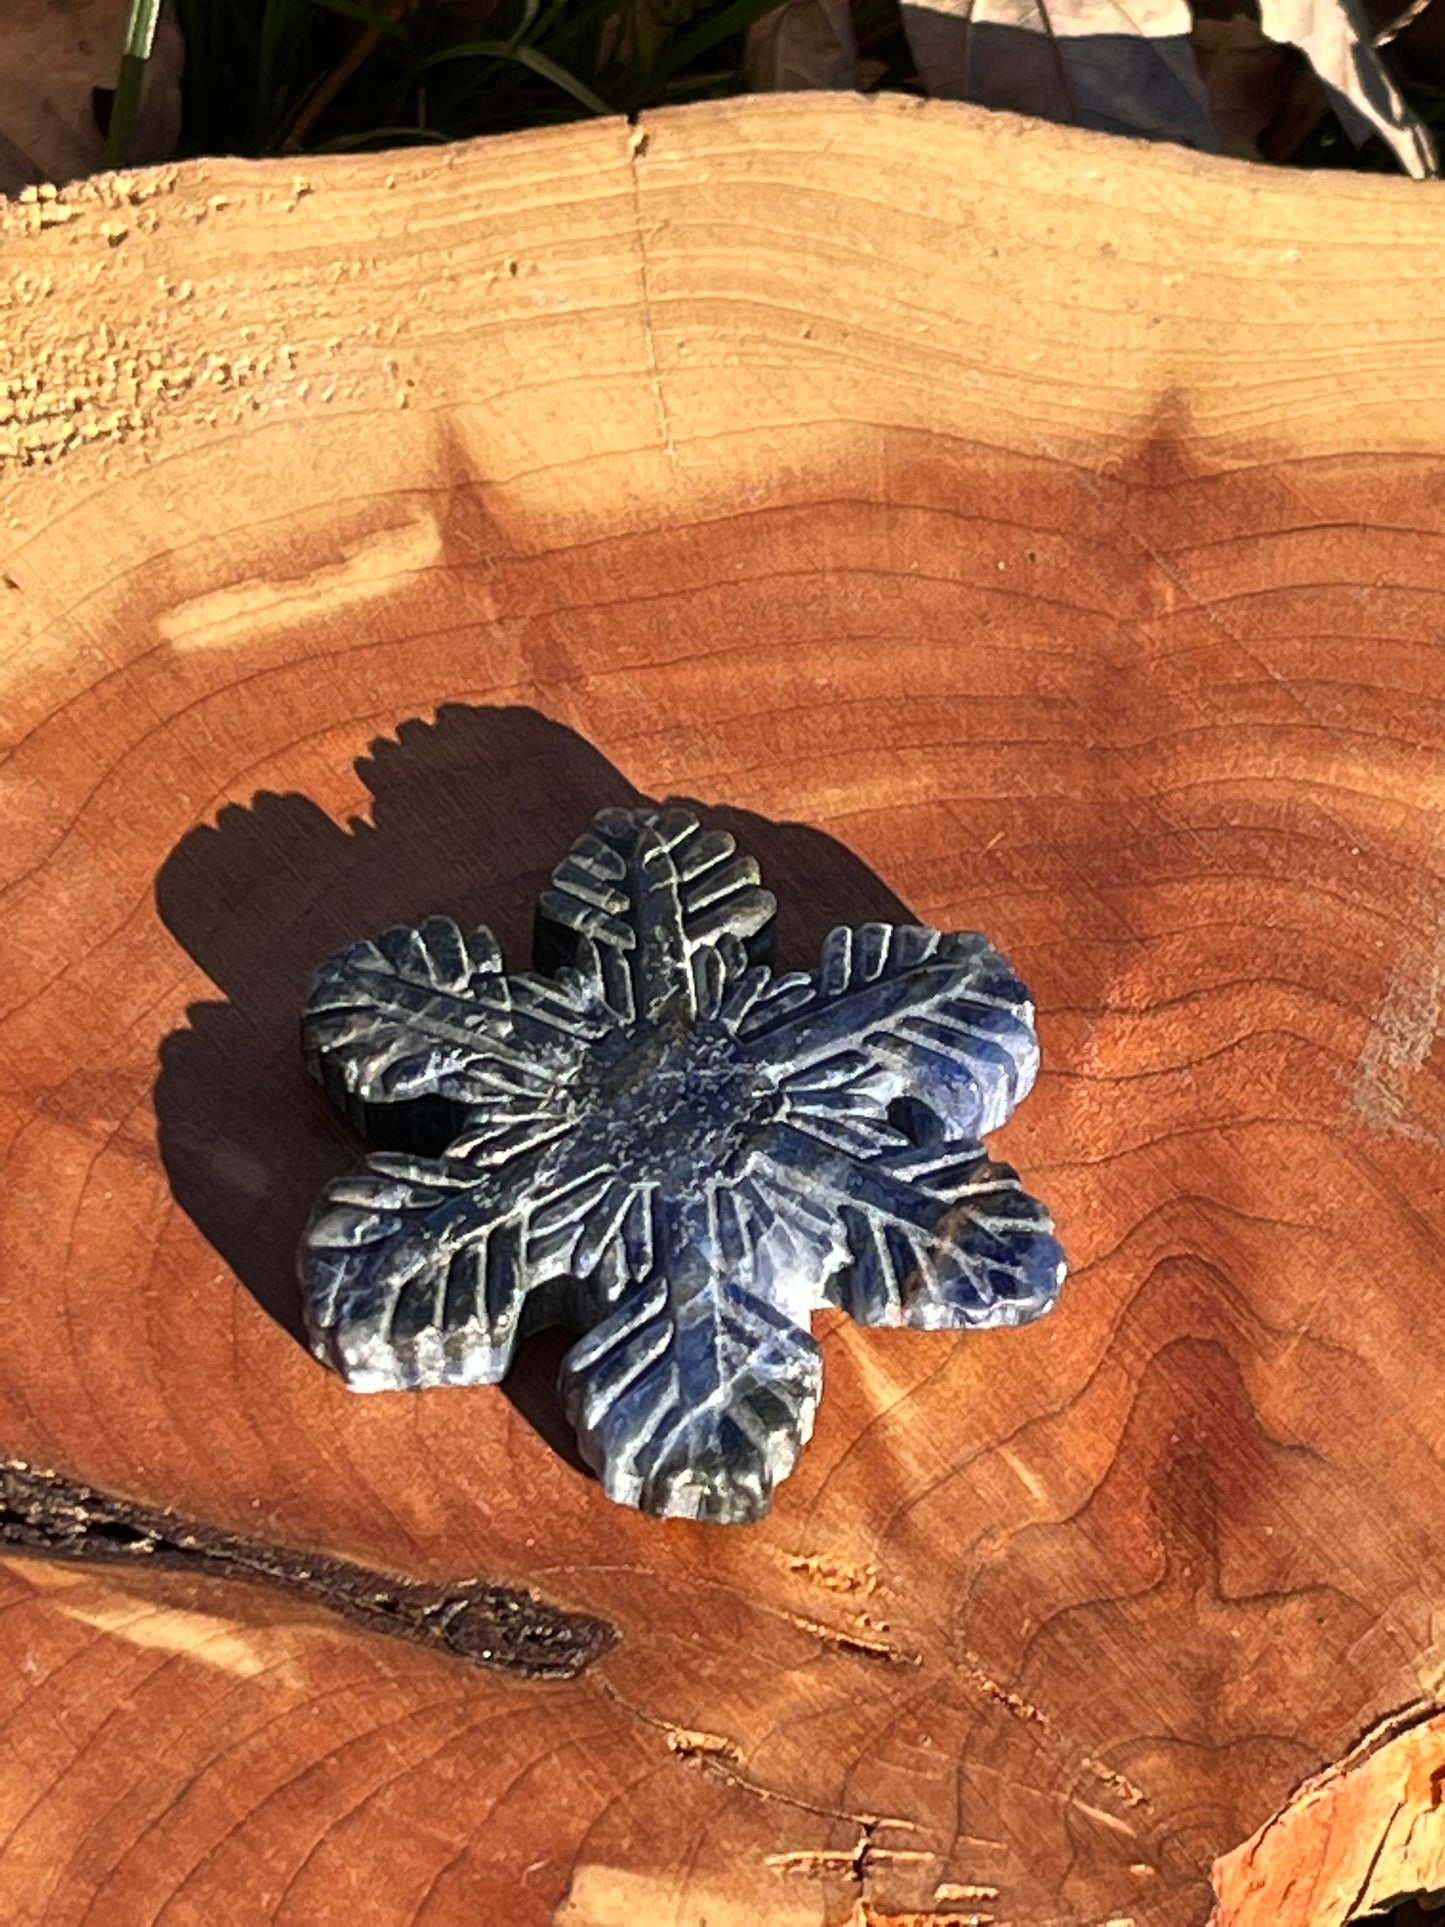 Snowflake Crystal Carvings